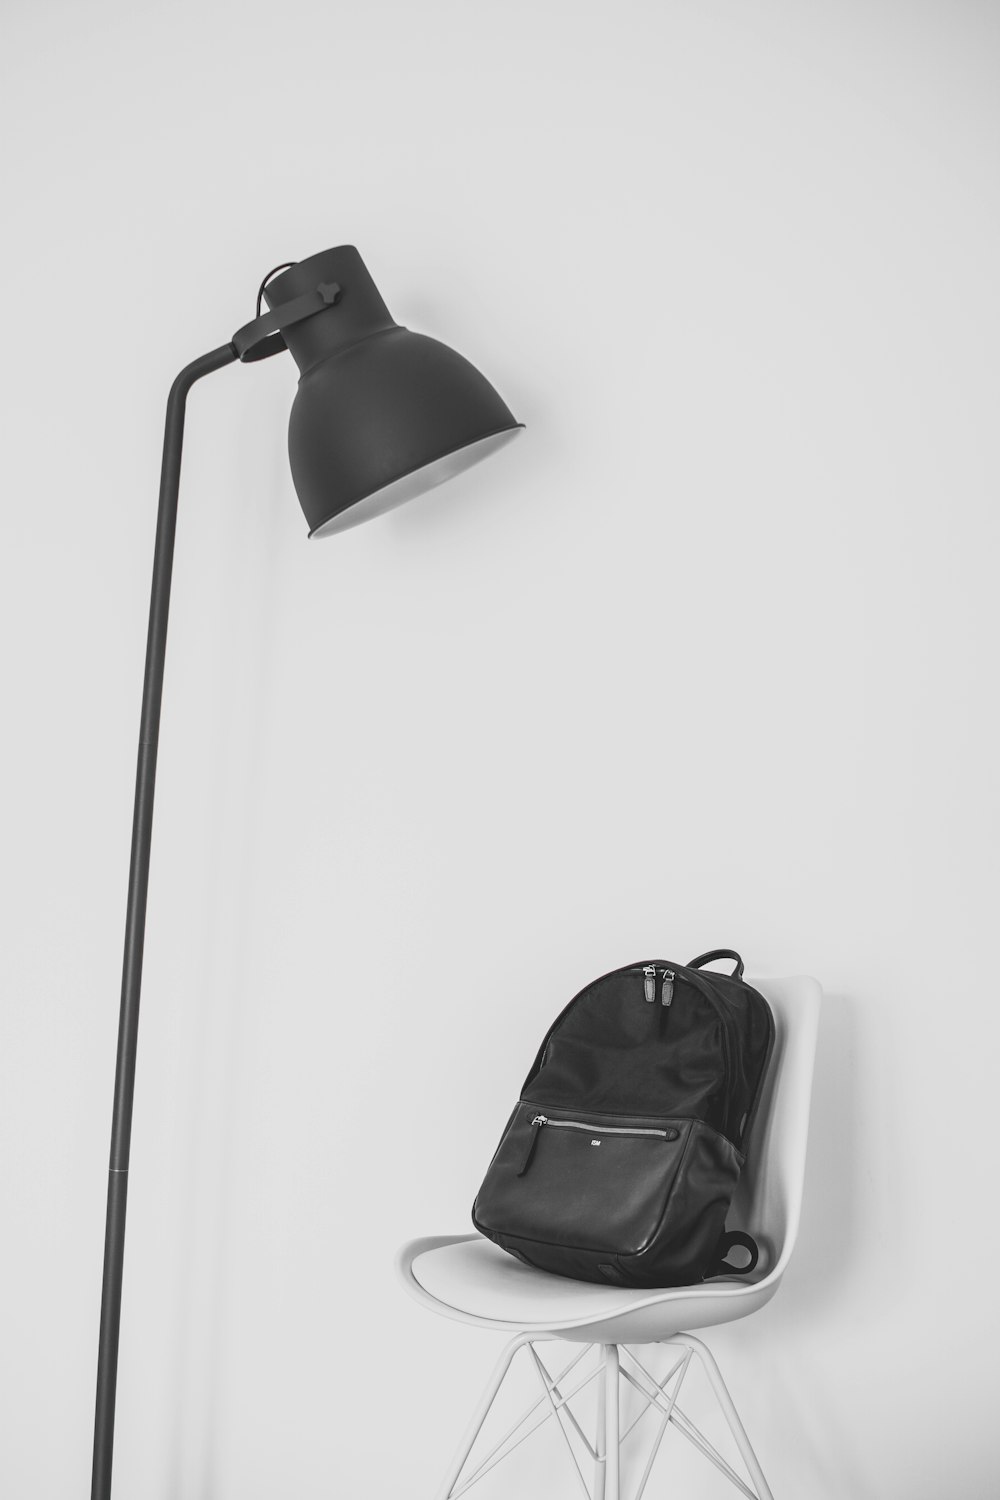 Lámpara negra al lado de la mochila en la parte superior de la silla